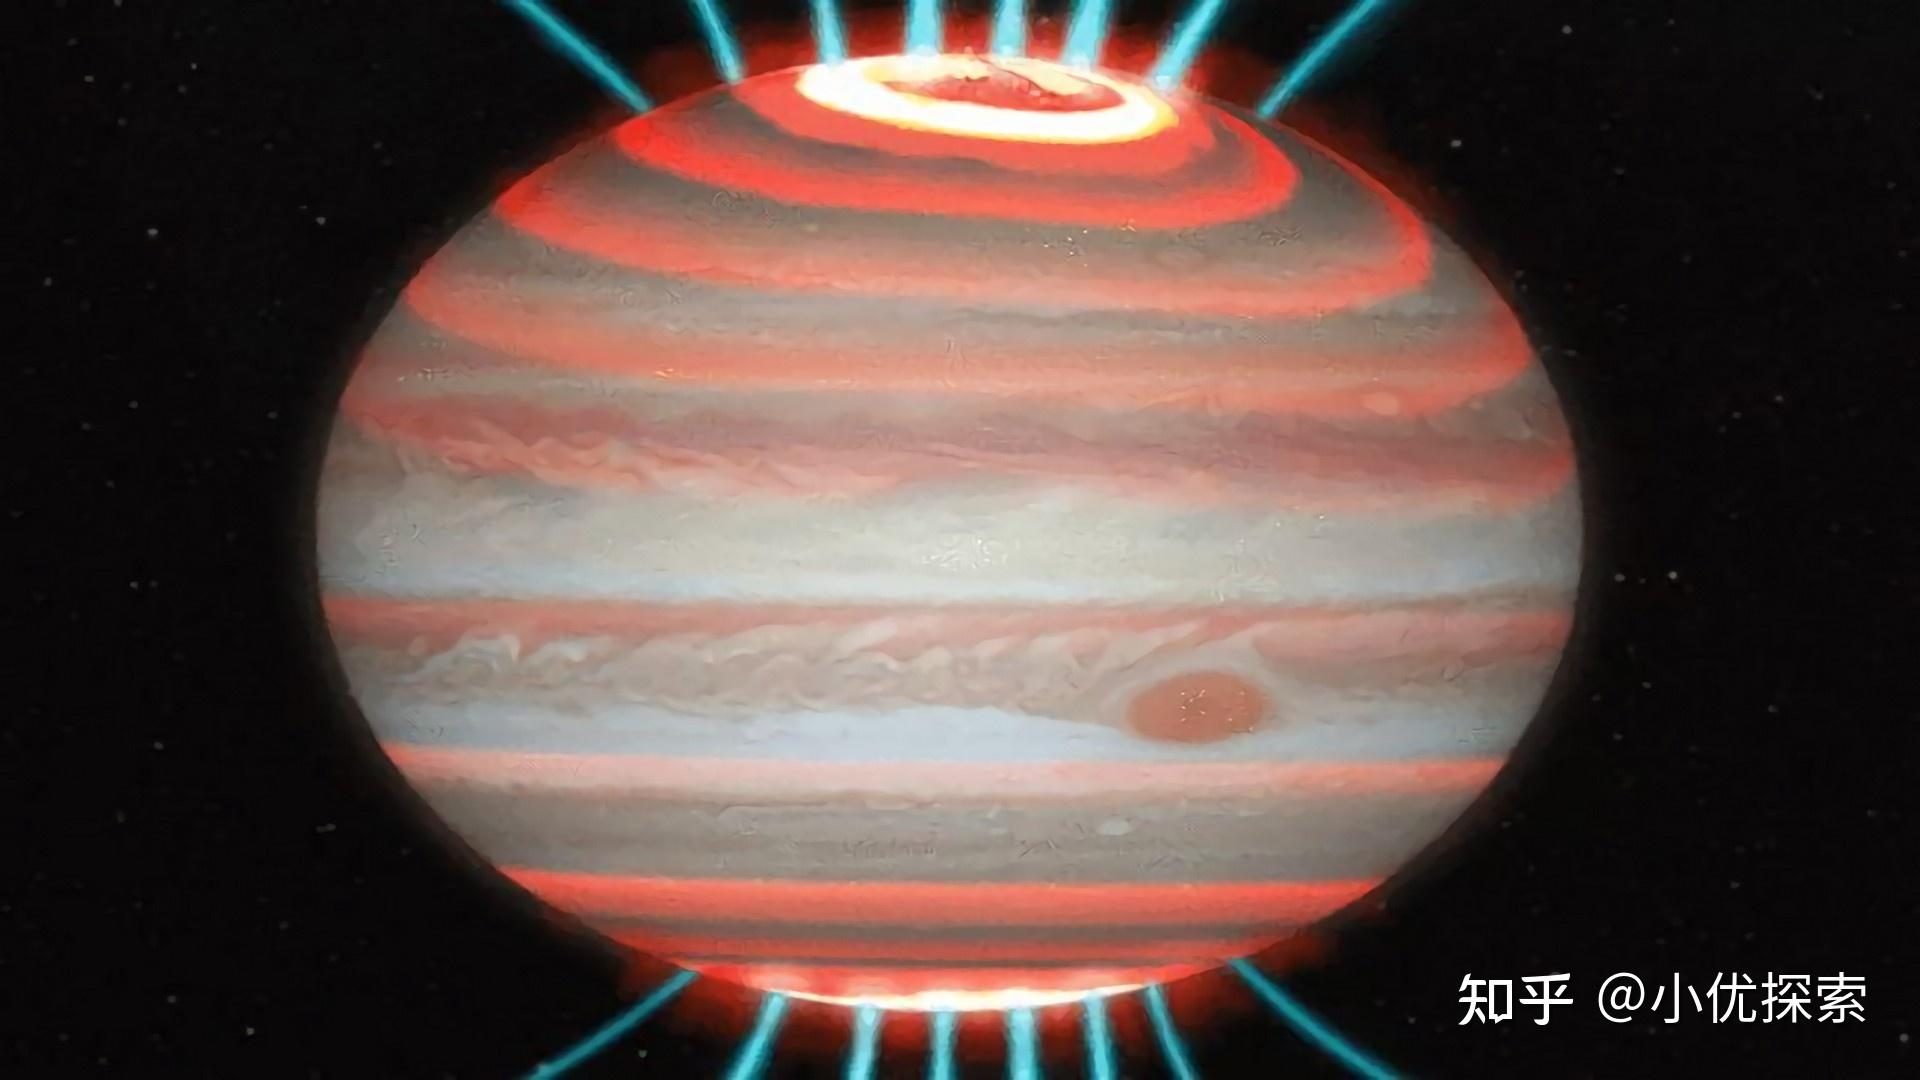 科学家绘制木星的高层大气图,揭示了木星加热危机背后的秘密